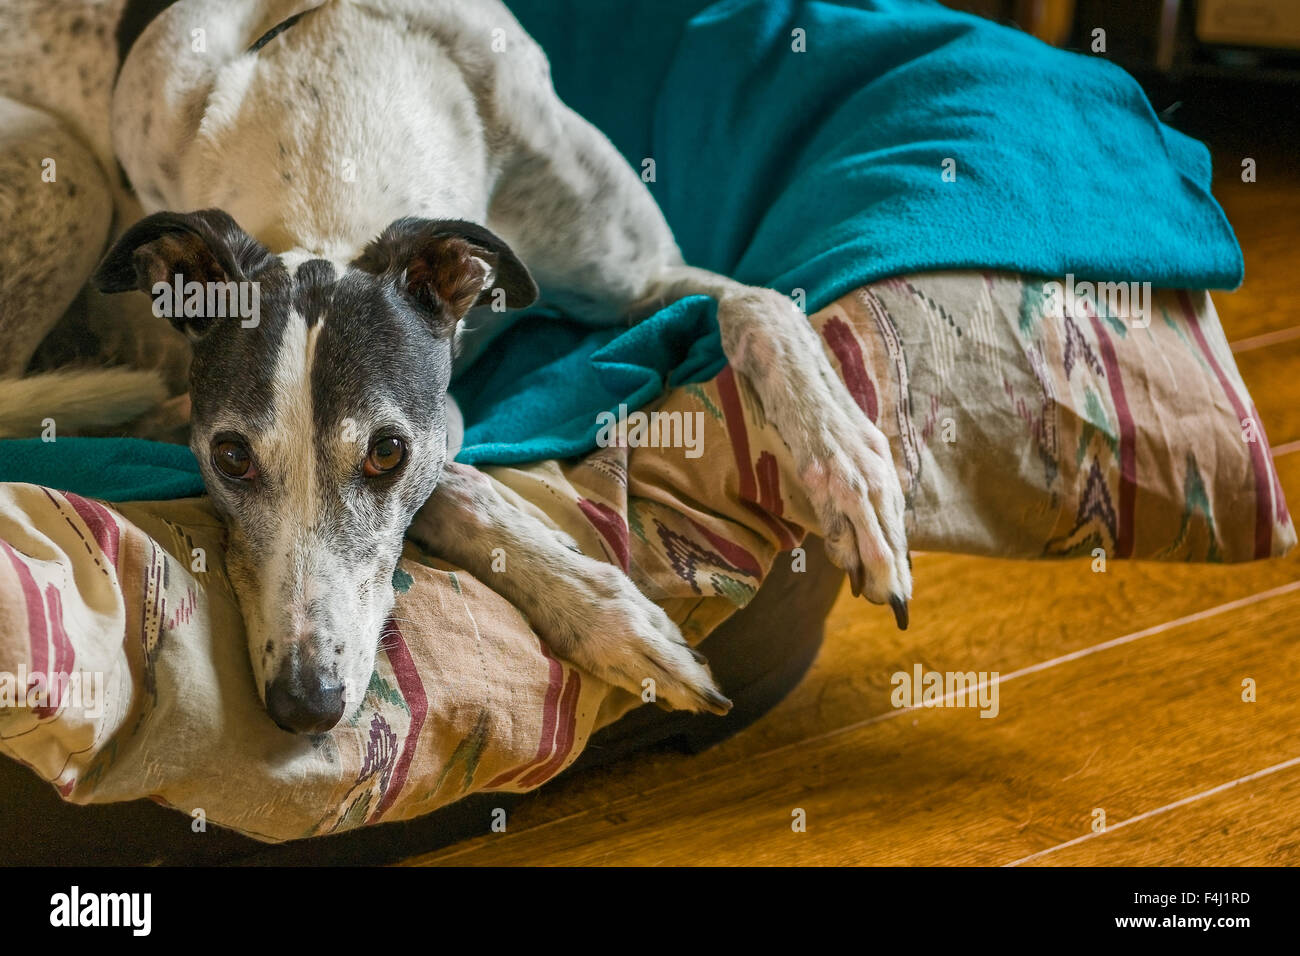 Greyhound noir et blanc, orienté vers l'avant dans un chien, lit avec couette brun et rouge et turquoise couverture, sur un sol en bois ; l'orientation paysage. Banque D'Images